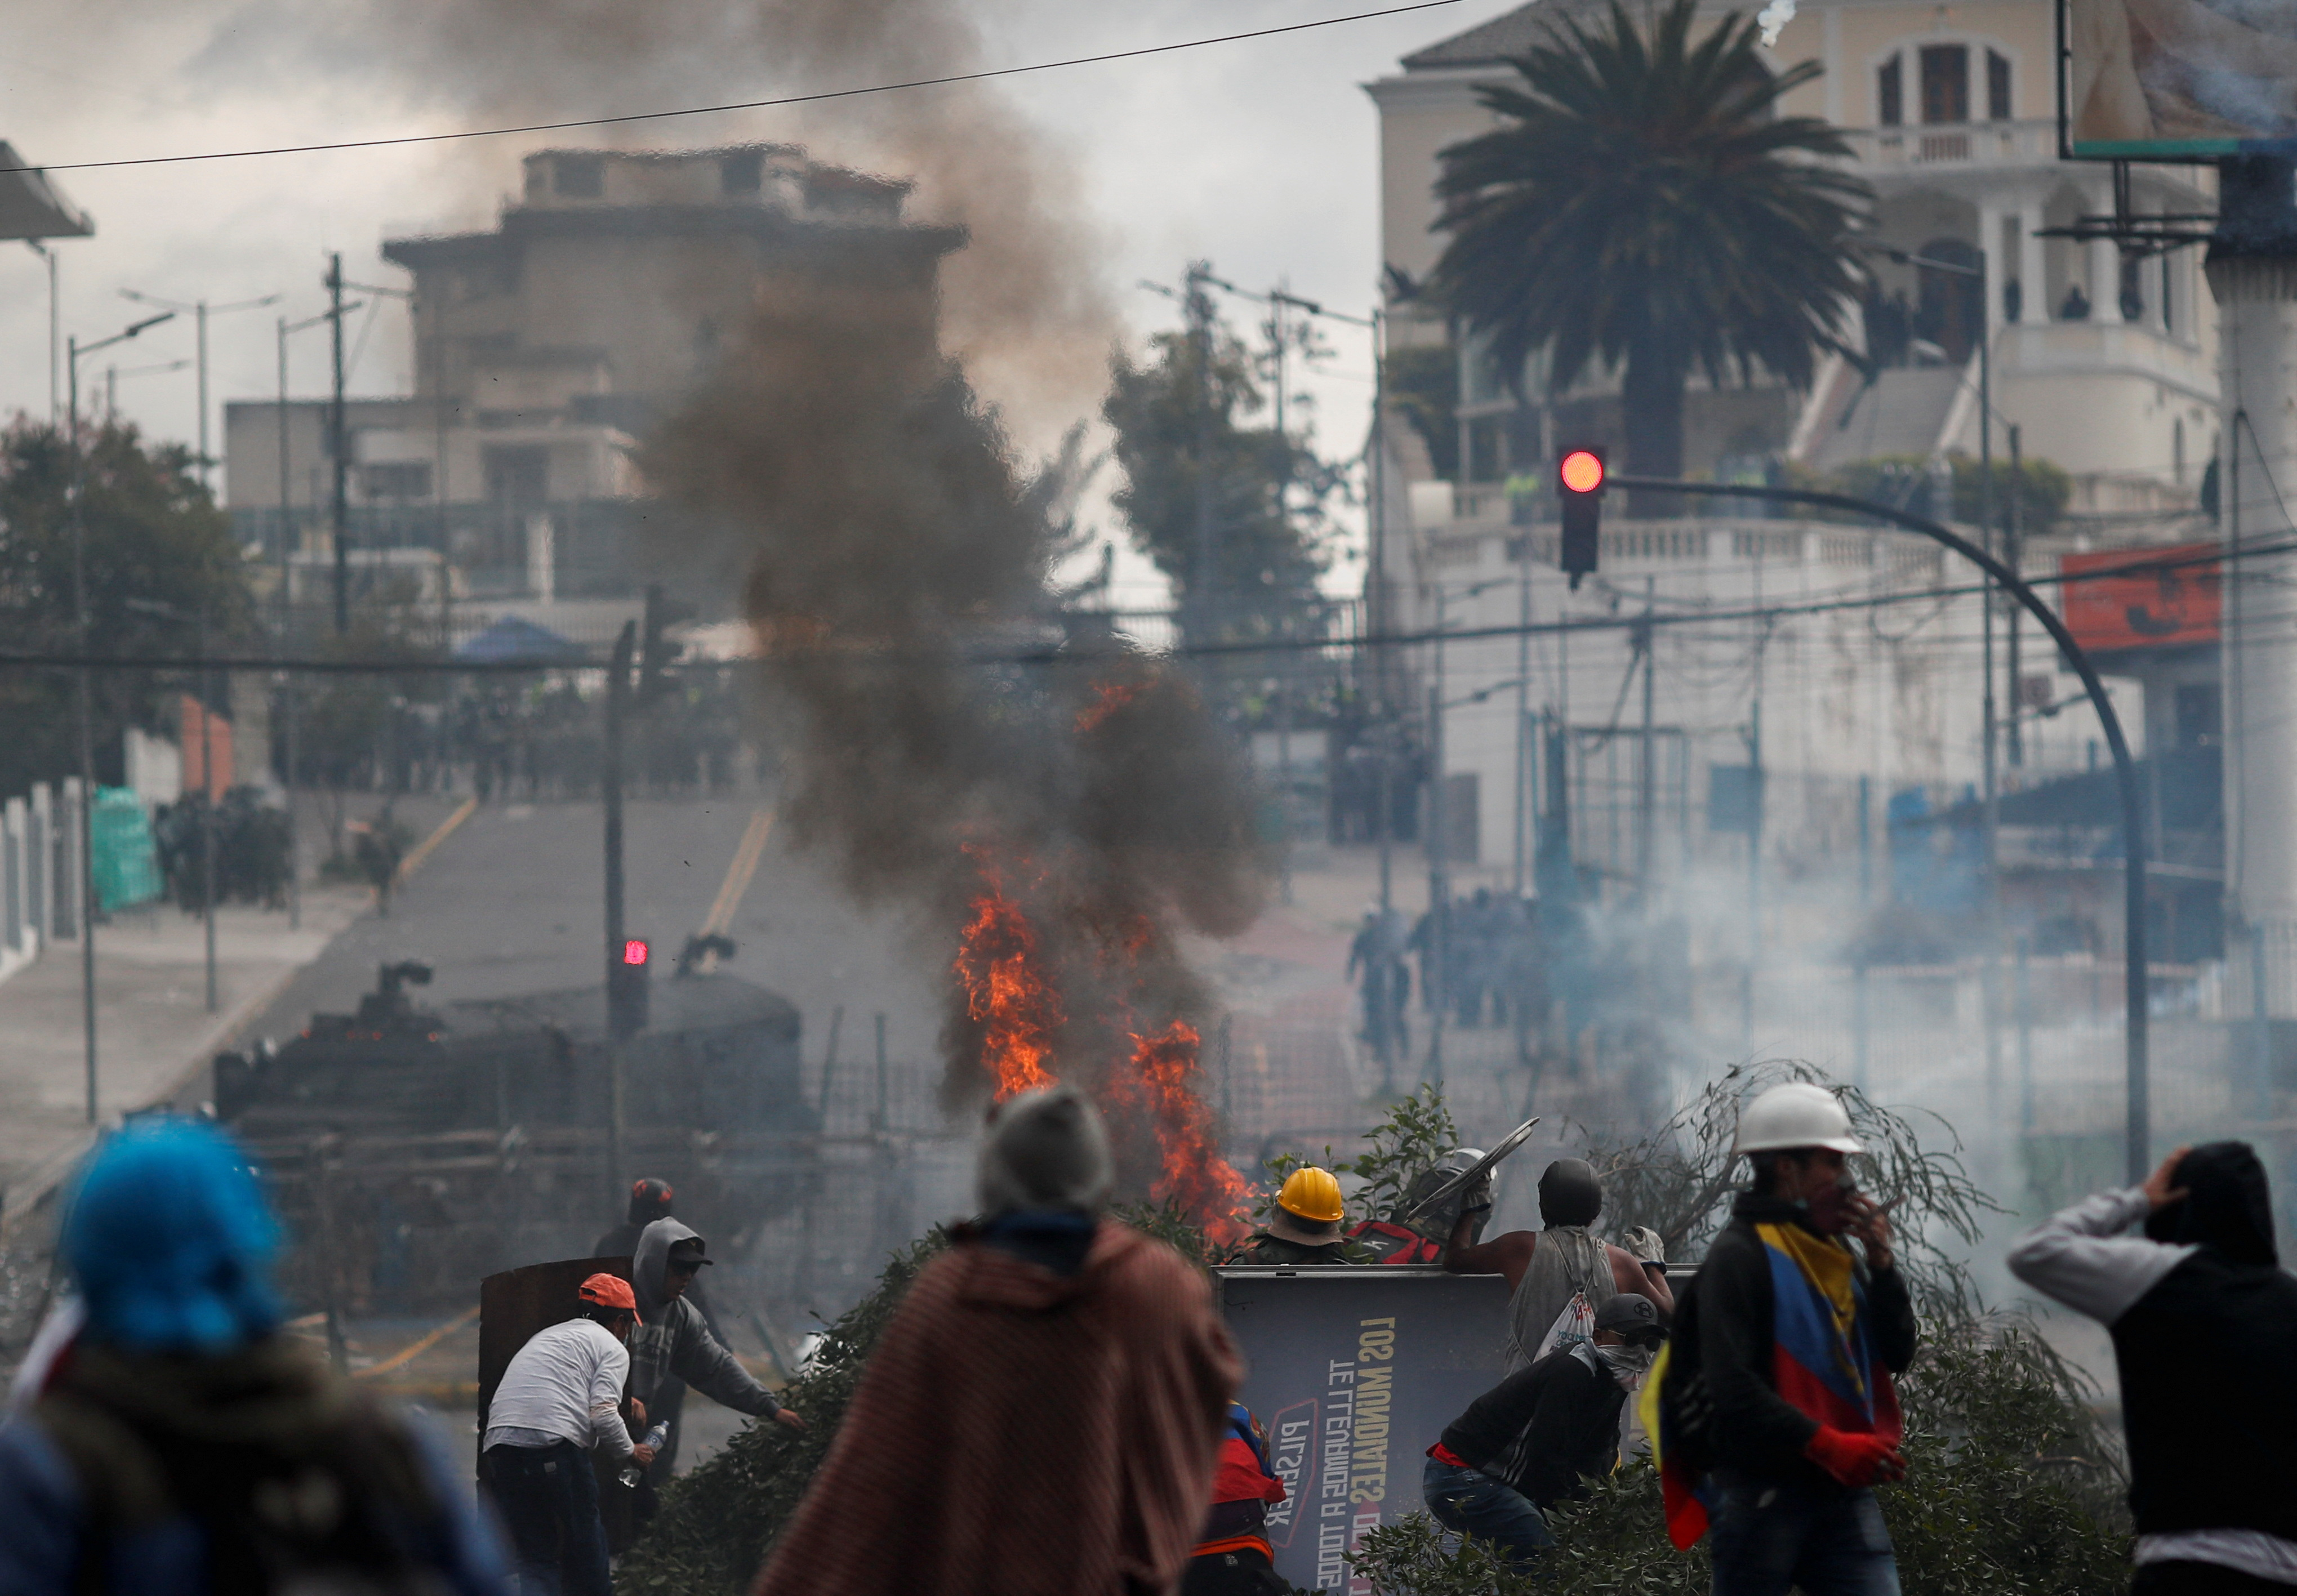 El 23 de junio fue una de las jornadas más violenta de las protestas. Fue ese día cuando Marta perdió su kiosco. (Foto: REUTERS/Adriano Machado).